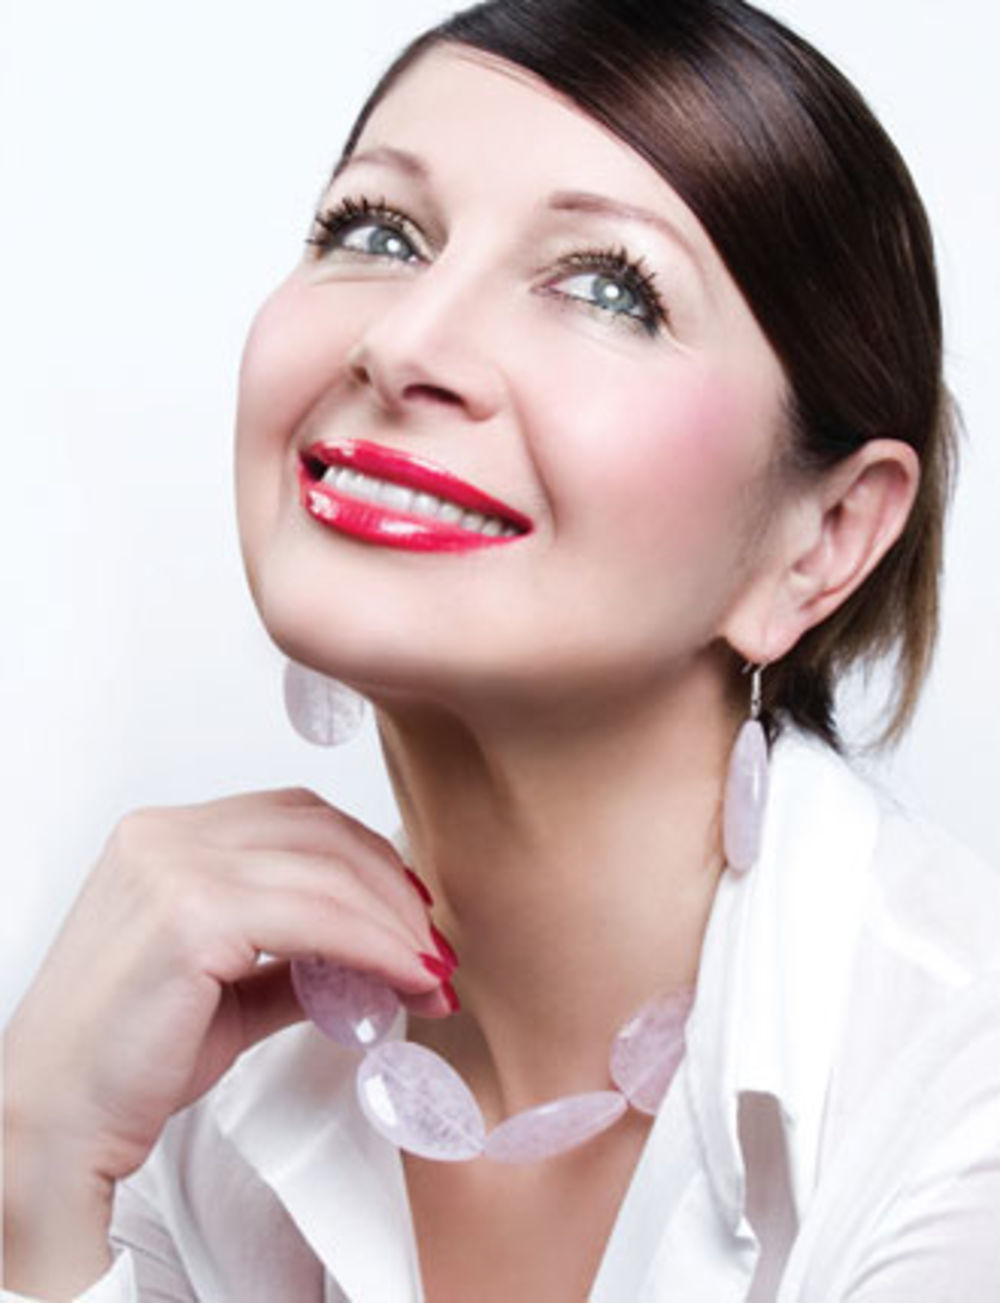 Sa željom da kad god se pogleda u ogledalo bude zadovoljna, glumica Danica Maksimović svoj mladalački izgled održava precizno raspoređenim tretmanima i masažama koje nadopunjuje efikasnima maskama za lice, serumima i hidratantnim kremama